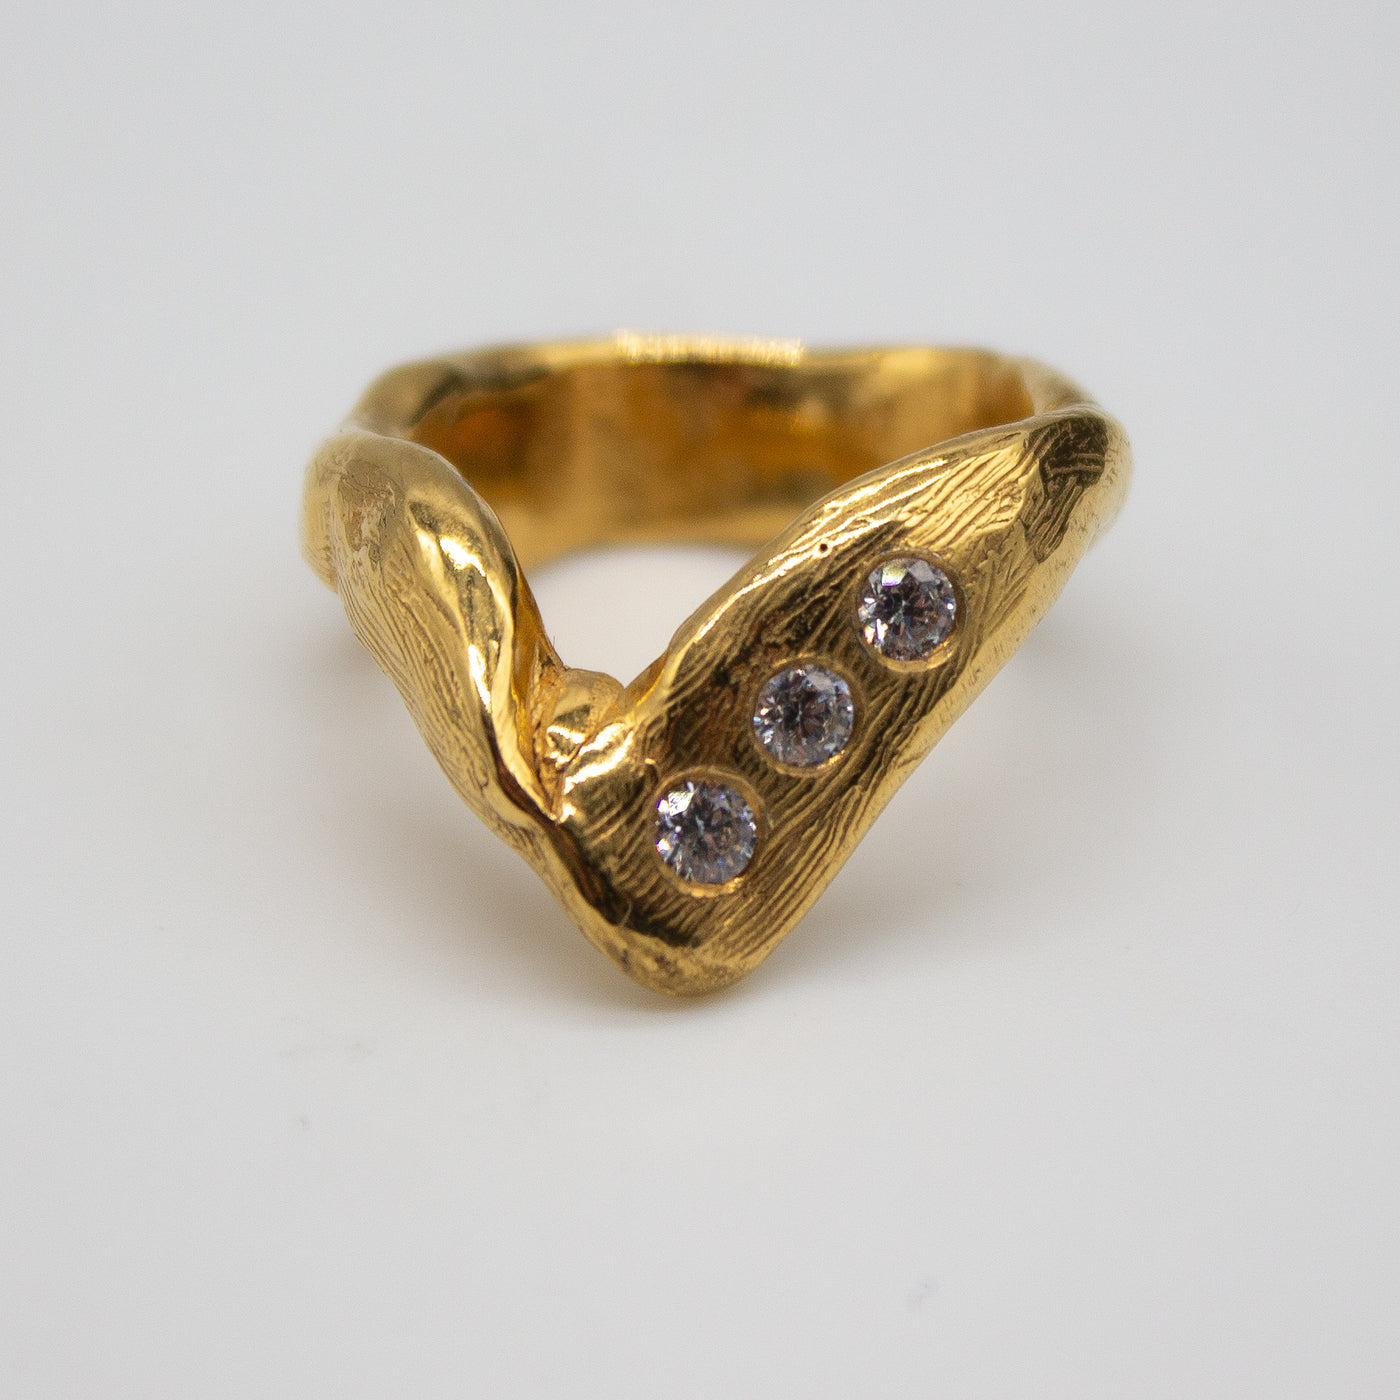 DRONNINGLUND // Ring vergoldet mit 3 eingefassten Zirkoniasteinen